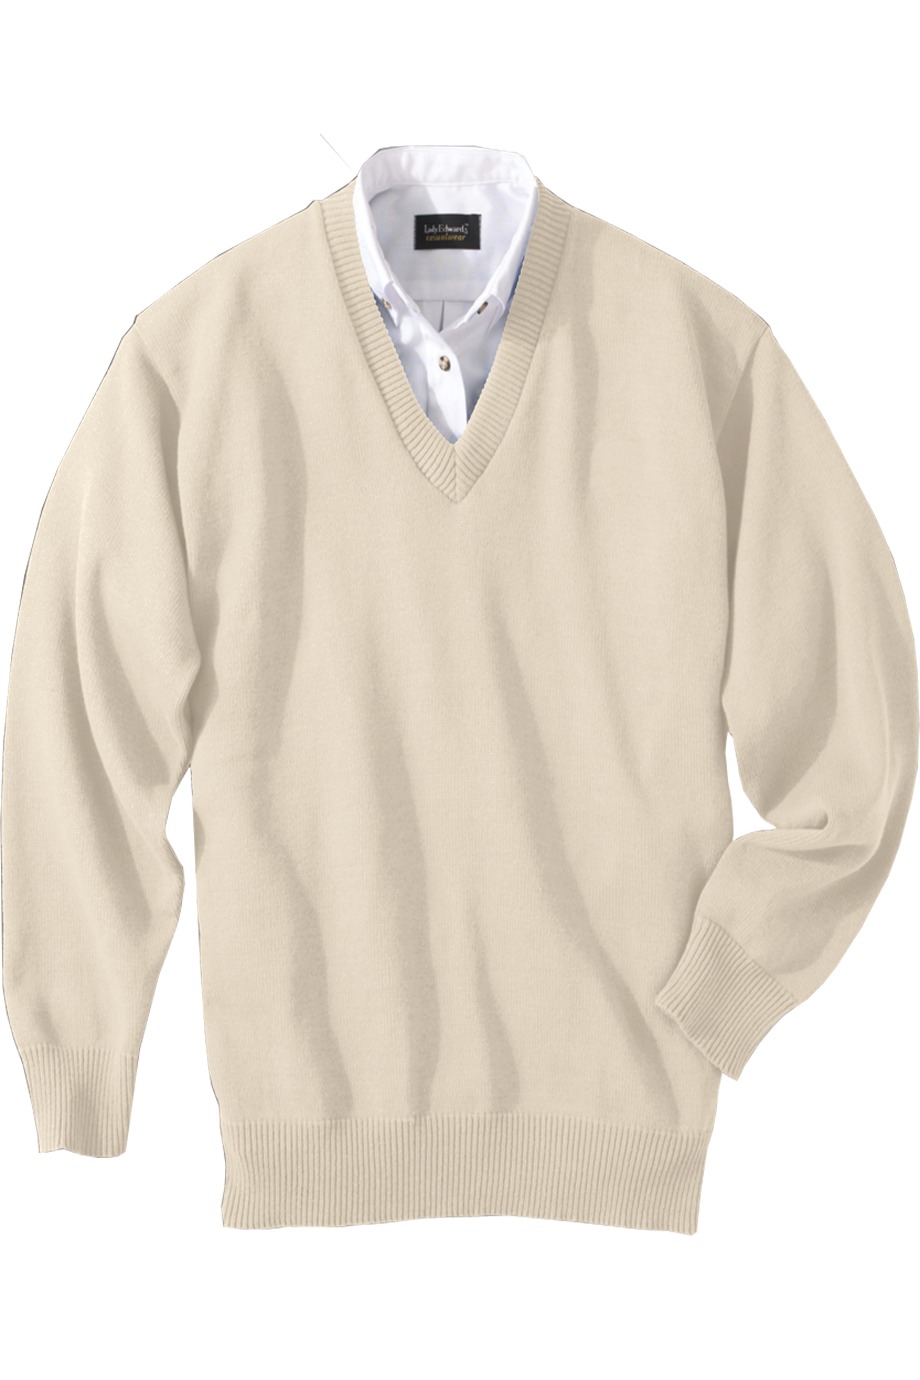 Edwards Garment 790 - Jersey Stitch V-Neck Sweater